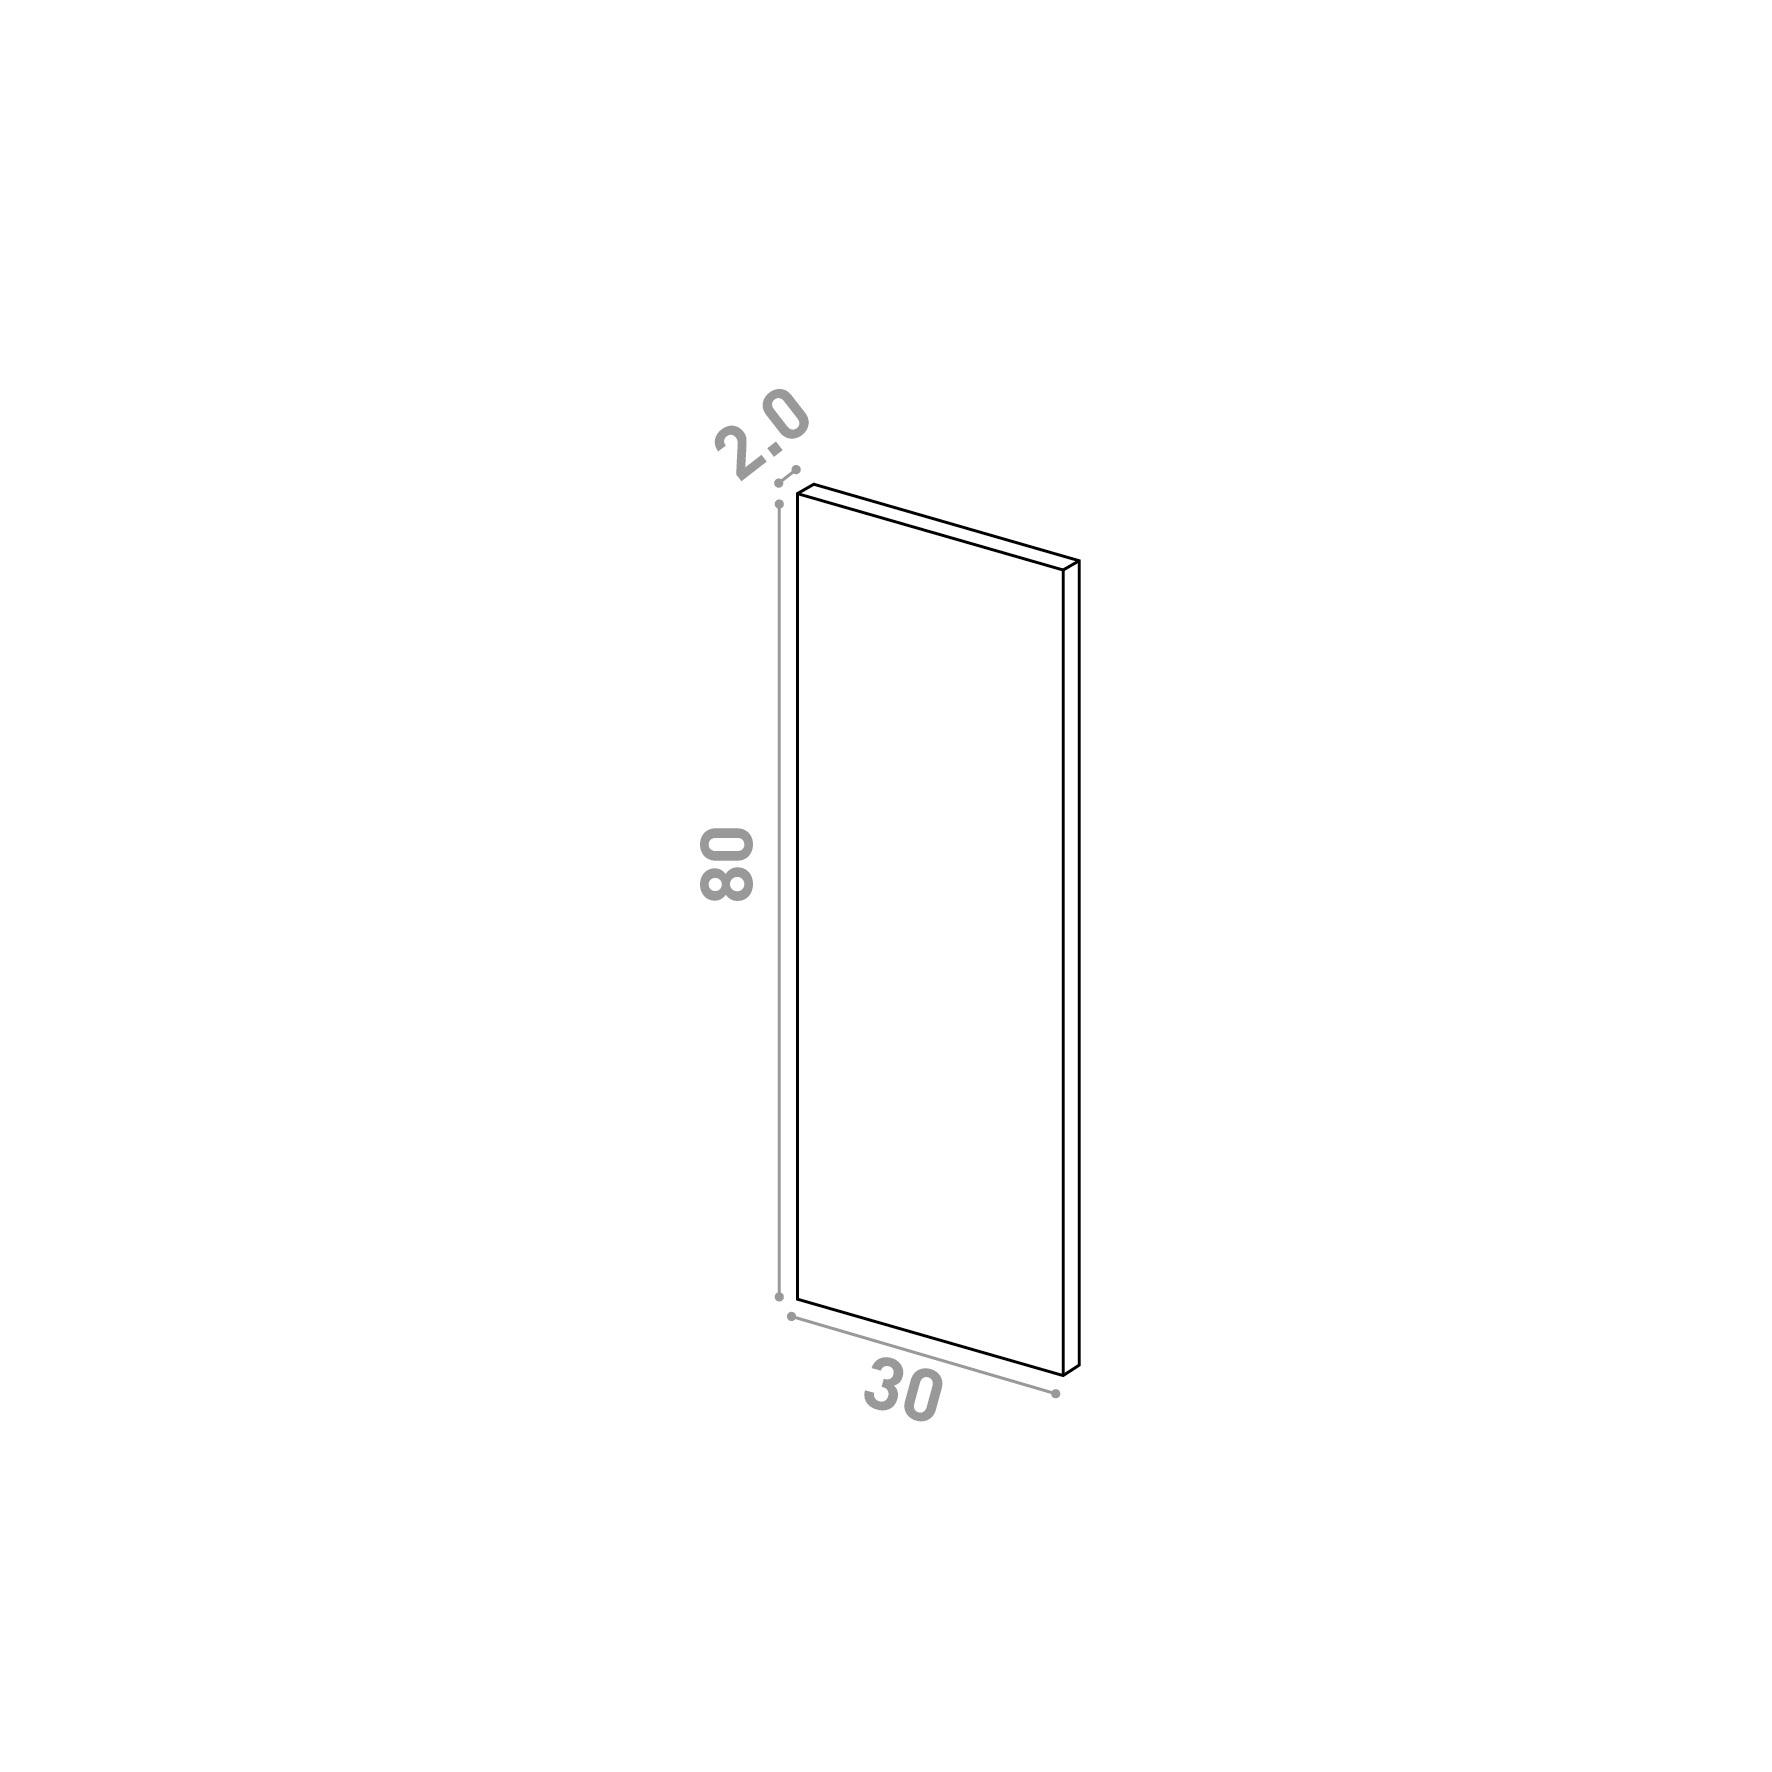 Door 30x80cm | Straight design | Matte lacquered